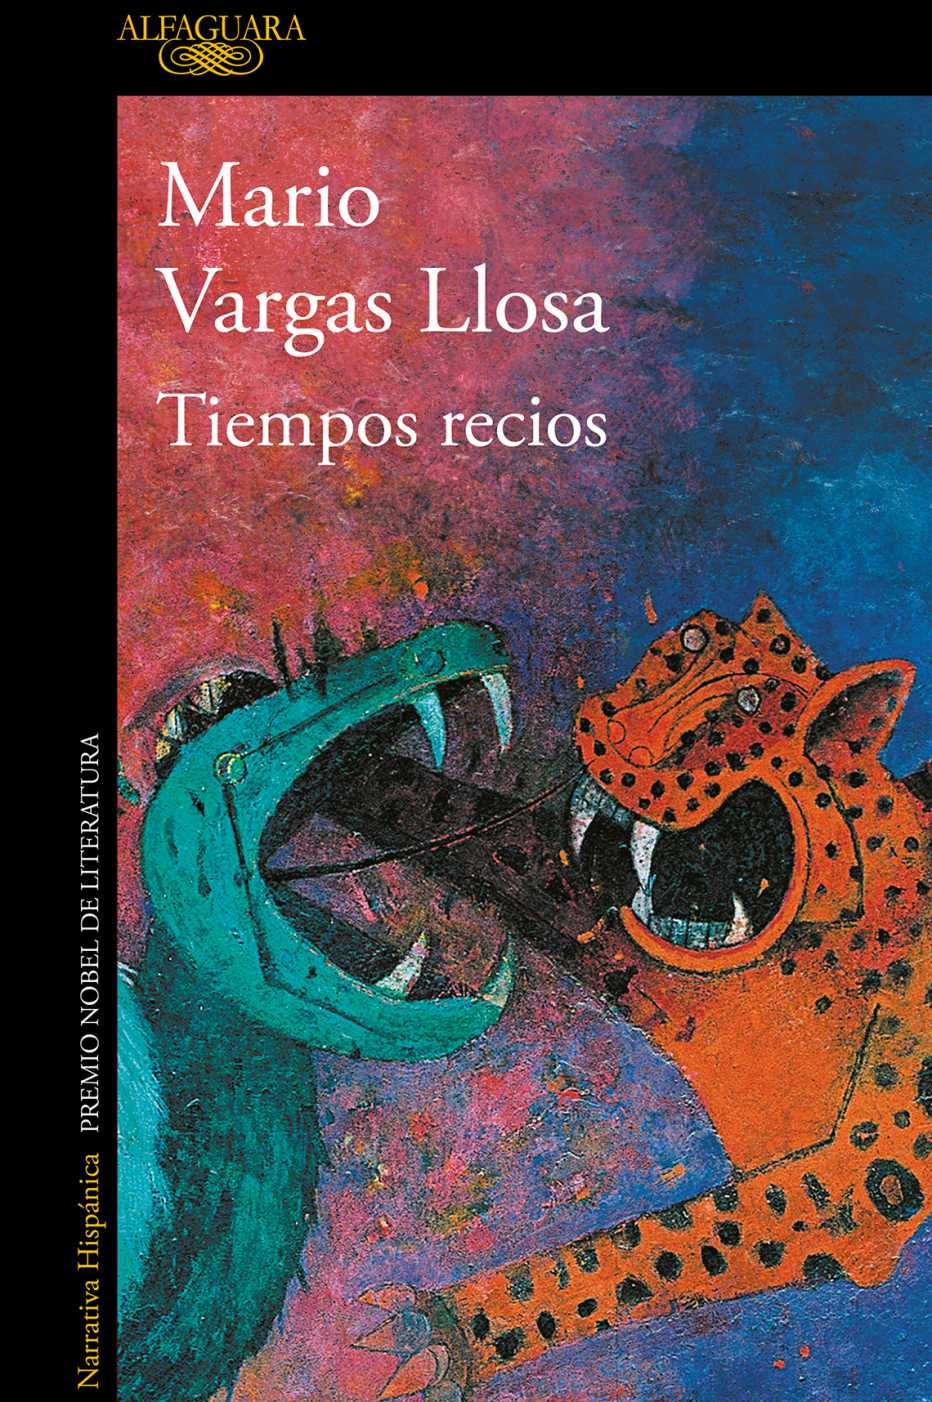 Portada de Tiempos recios de Mario Vargas Llosa.